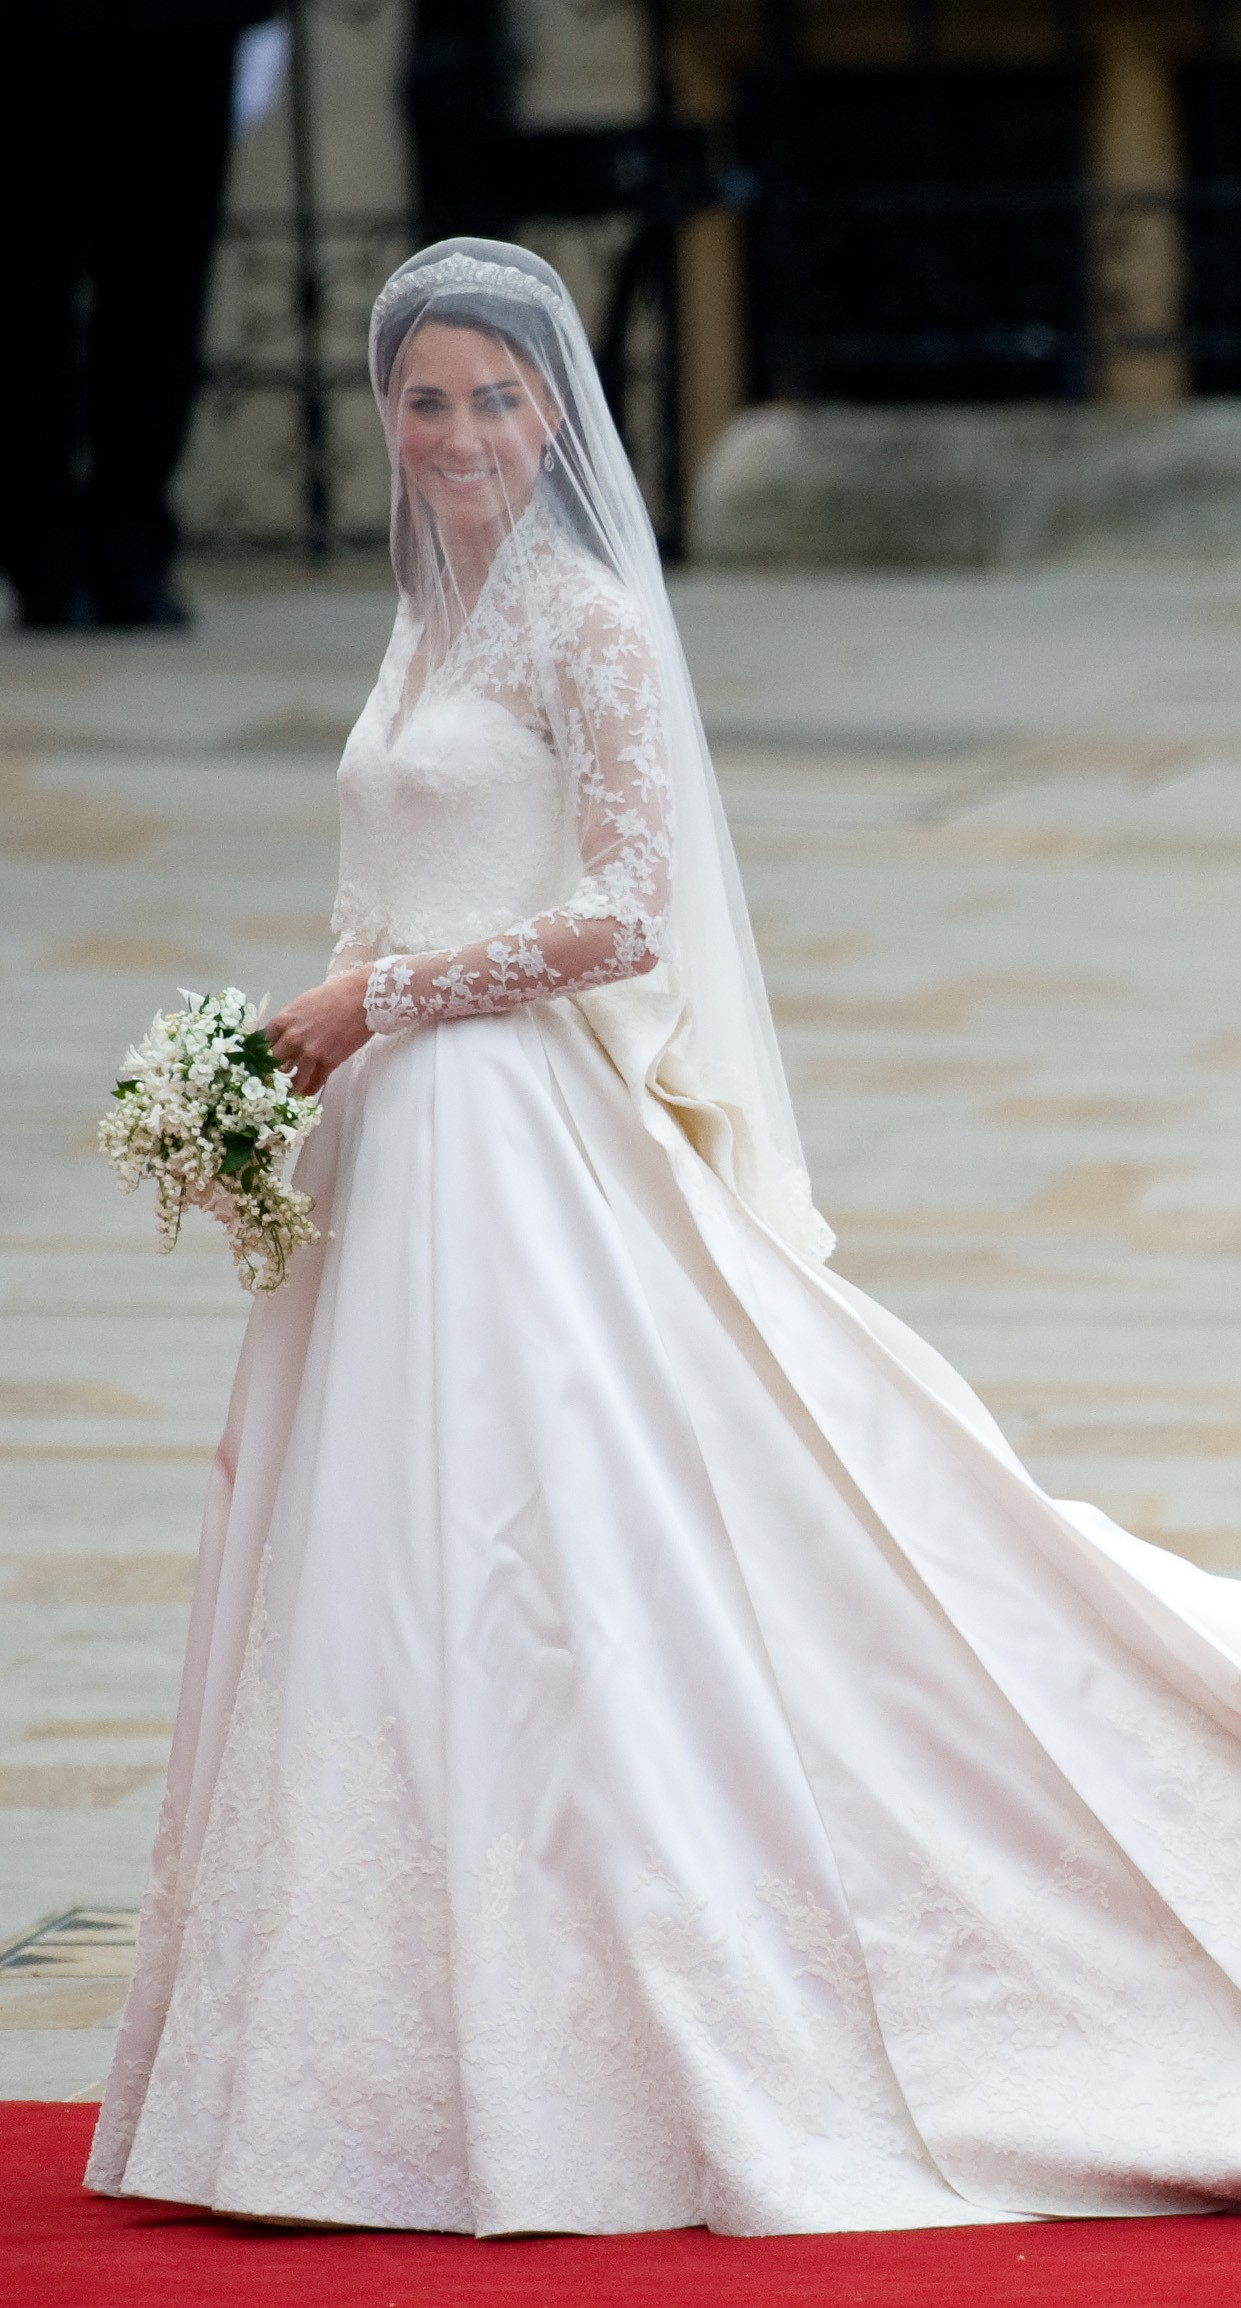 kiderült, ez katalin hercegné kedvenc esküvői fotója: meglepő módon vilmos herceg nem szerepel rajta